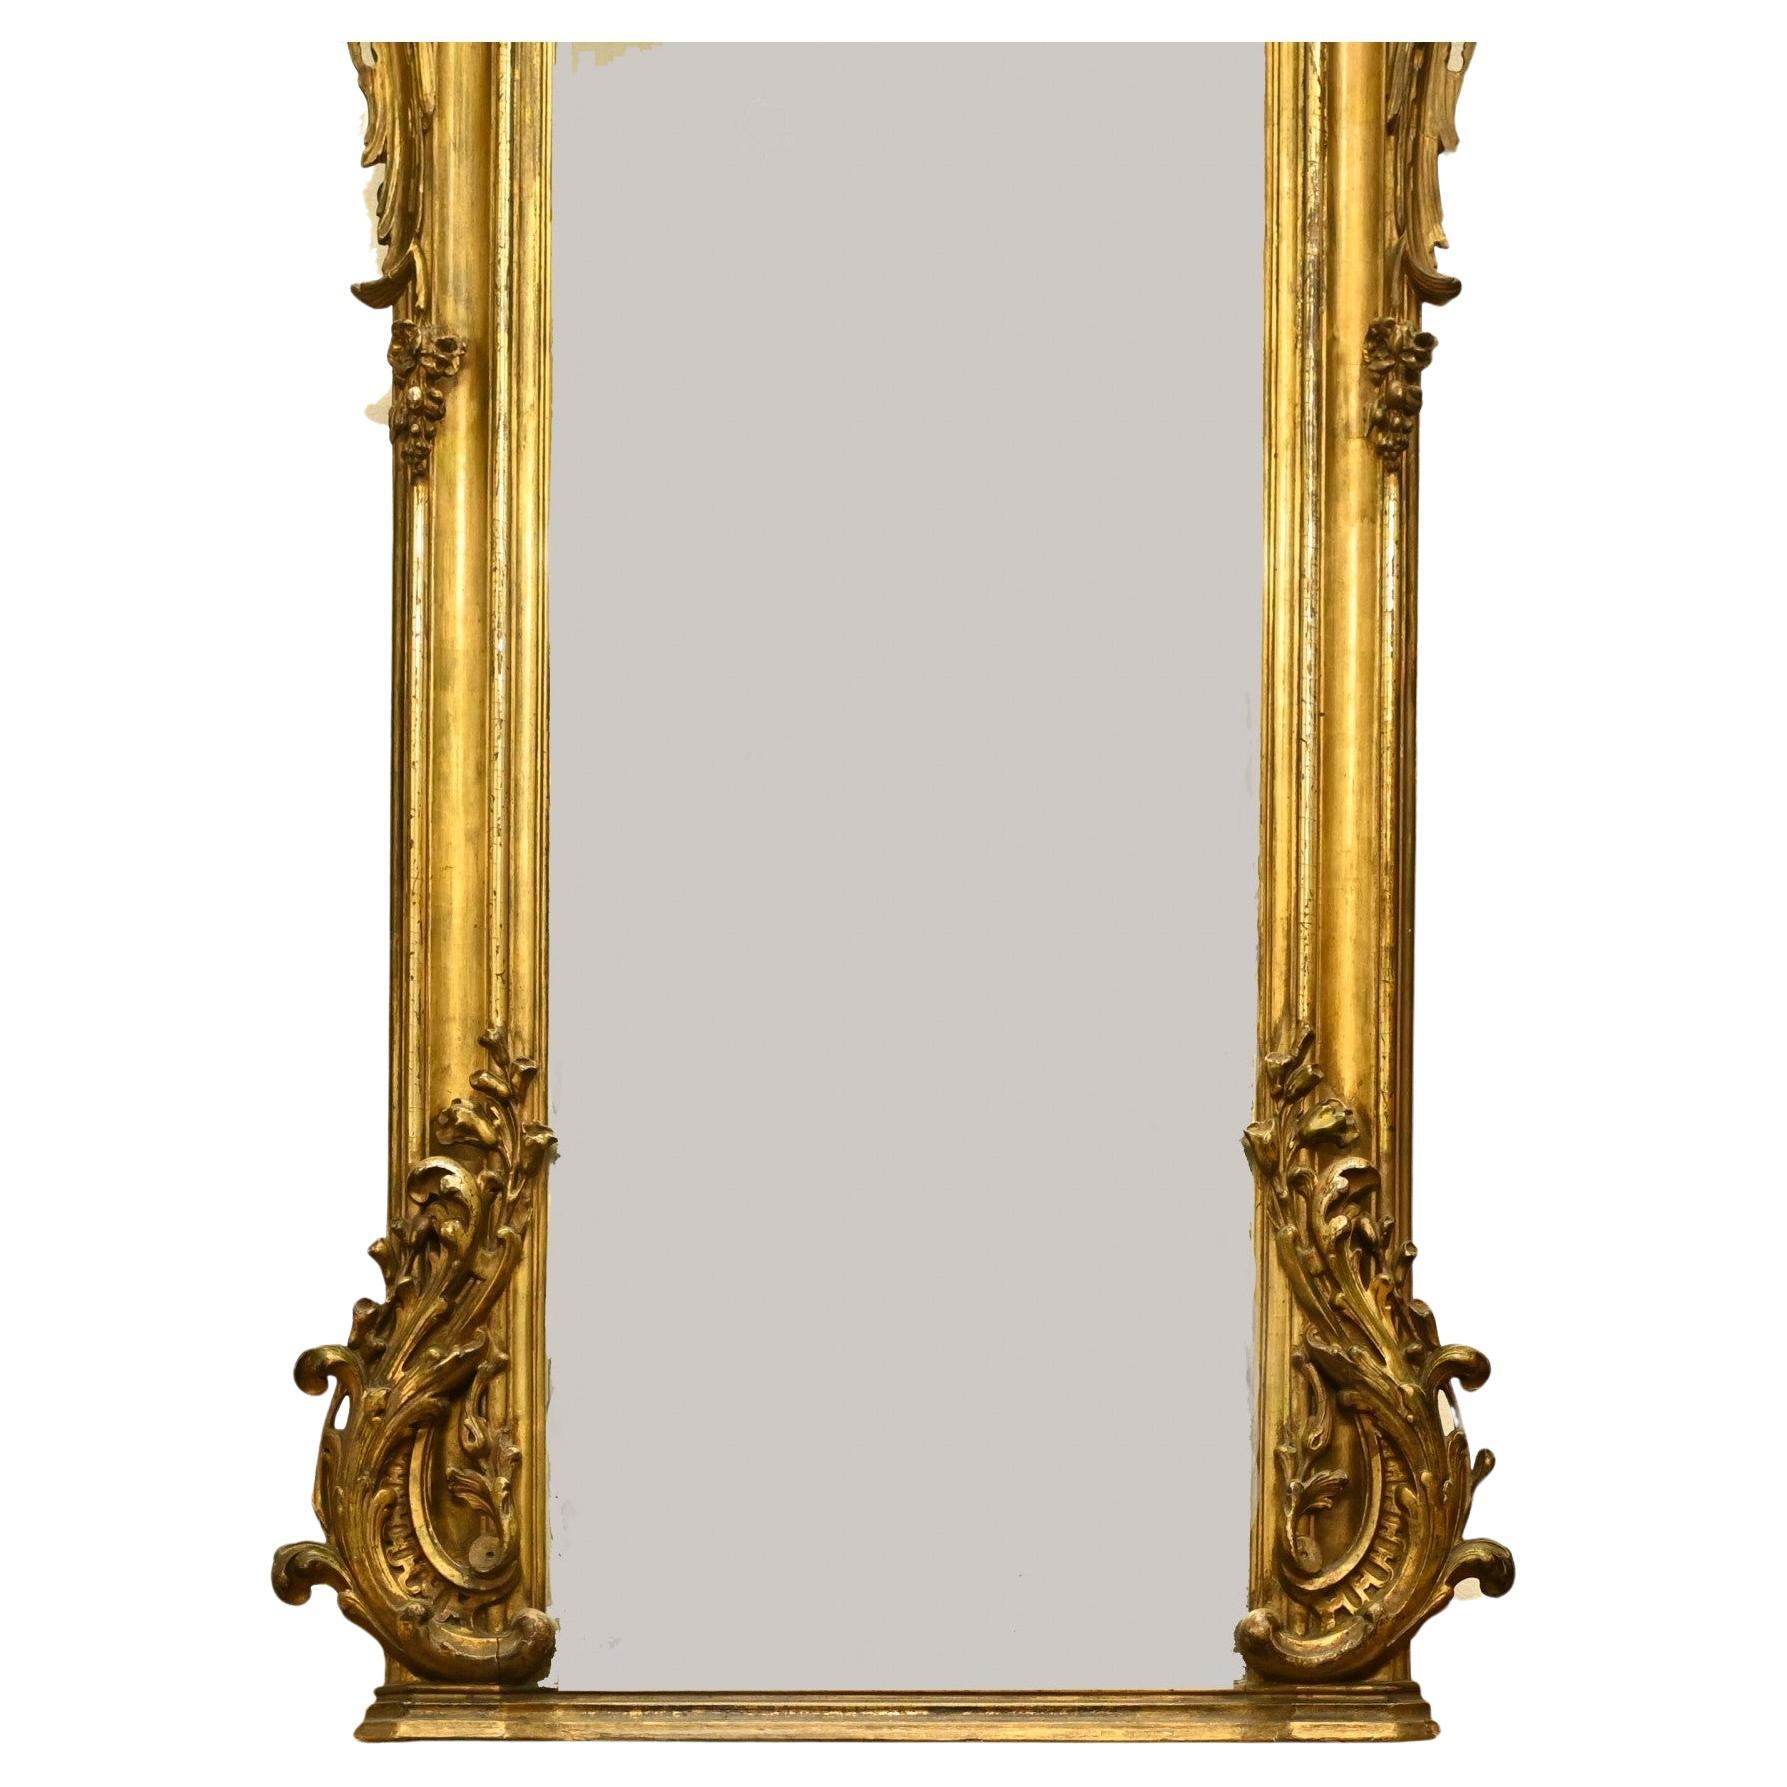 Magnifique miroir ancien français doré
Bonne taille à près d'un mètre quatre-vingt-dix - 172 CM
Cadre très orné avec décoration sur les côtés et le dessus avec cartouche rococo.
Le verre est clair et sans défaut
Acheté chez un marchand à Marche